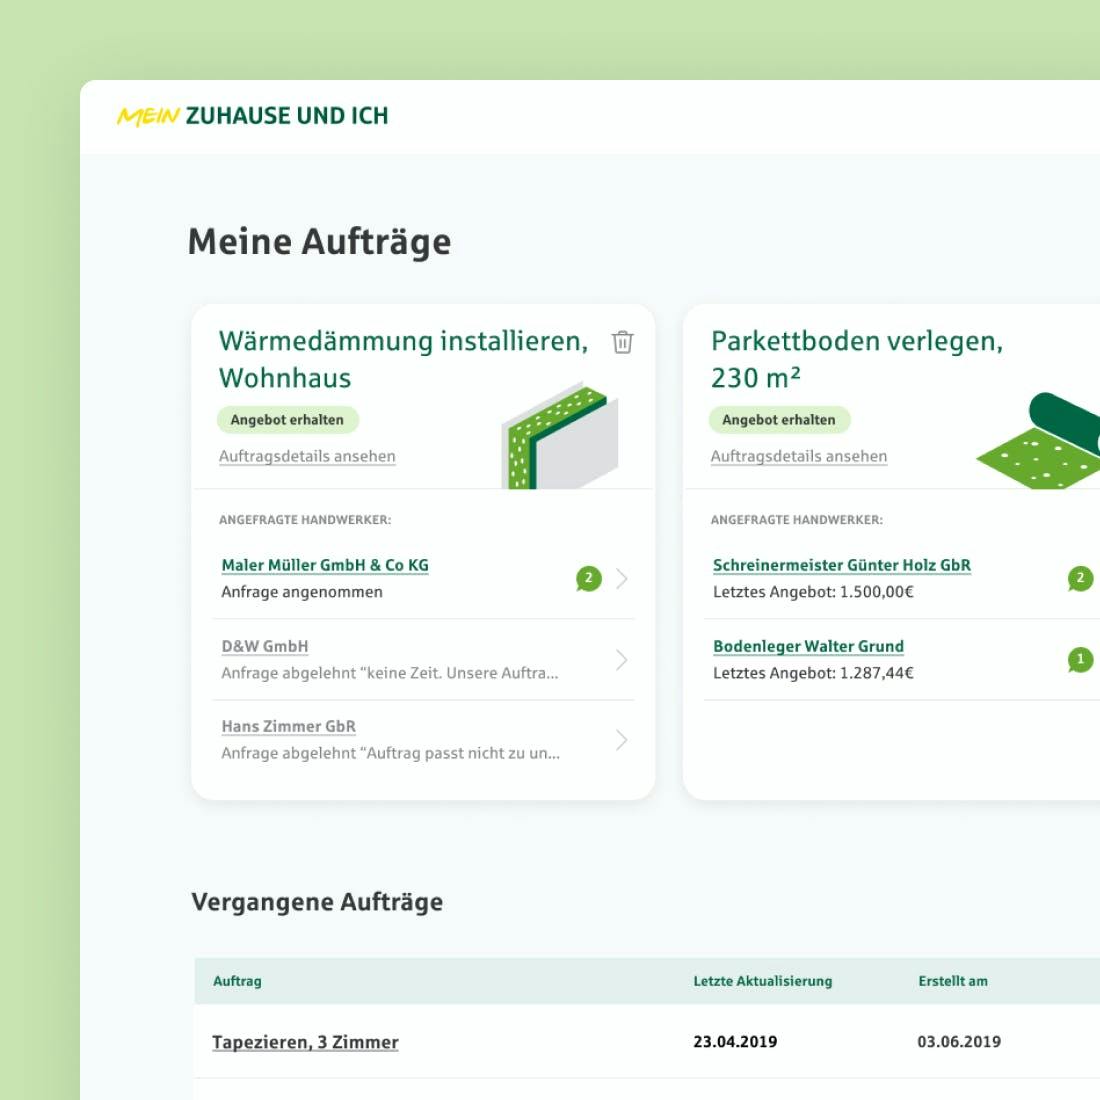 Interface Design für die Versicherung Provinzial Rheinland